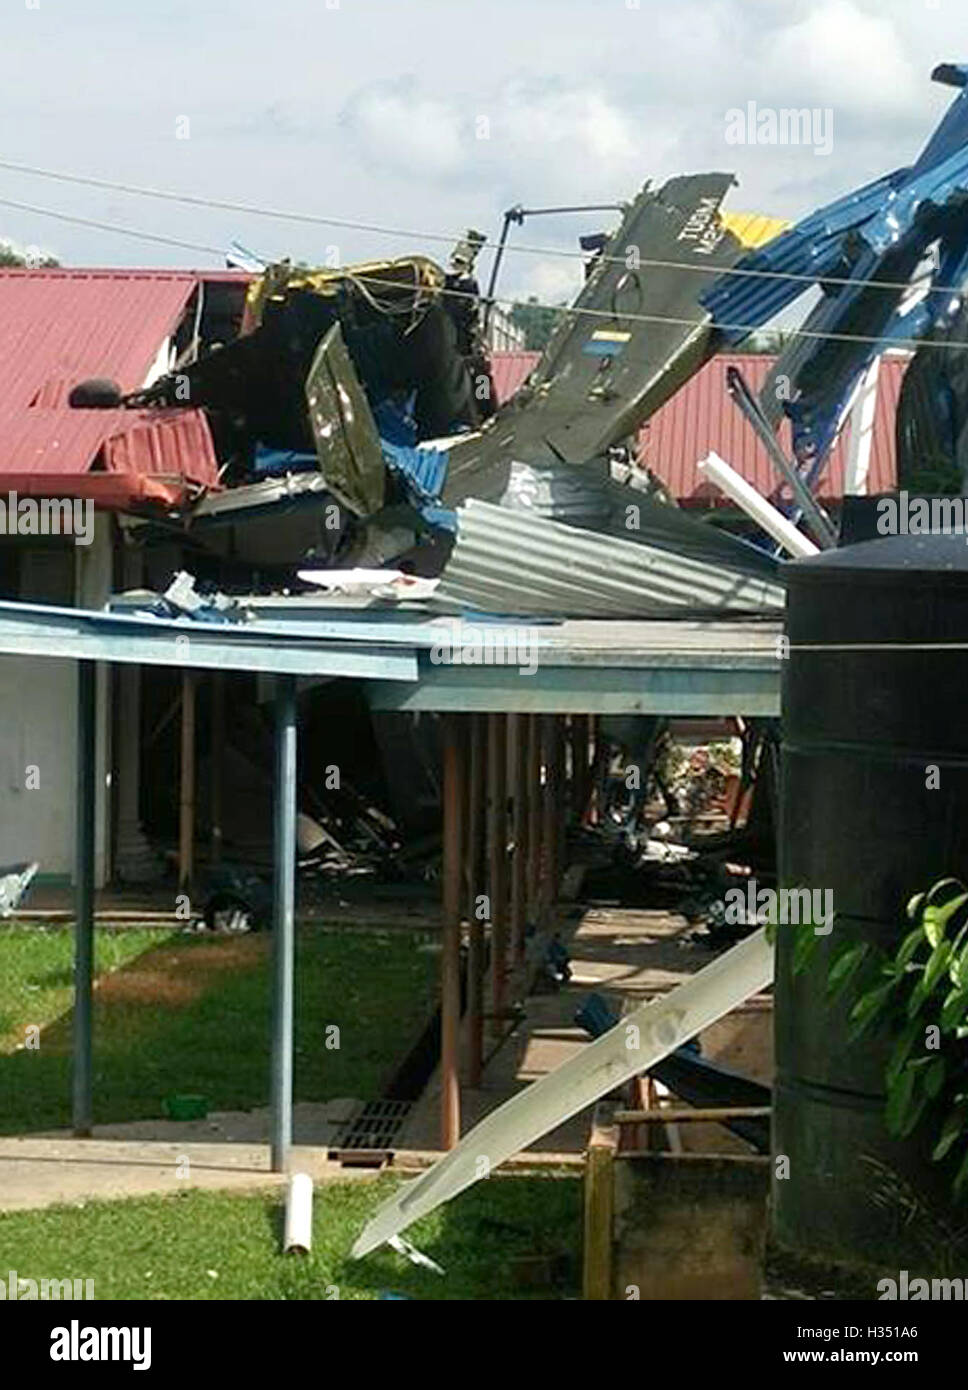 Tawau, Sabah, Malaisie. 4 octobre 2016. site d'un accident d'hélicoptère dans l'est de la Malaisie Tawau Sabah. Un hélicoptère Sikorsky S-61 'Nuri' hélicoptère transportant 14 membres du personnel militaire s'est écrasé mardi matin sur le toit d'un bâtiment scolaire dans Tawau de l'est de la Malaisie, Sabah, a déclaré la police locale. (Xinhua) (nxl) Credit : Xinhua/Alamy Live News Banque D'Images